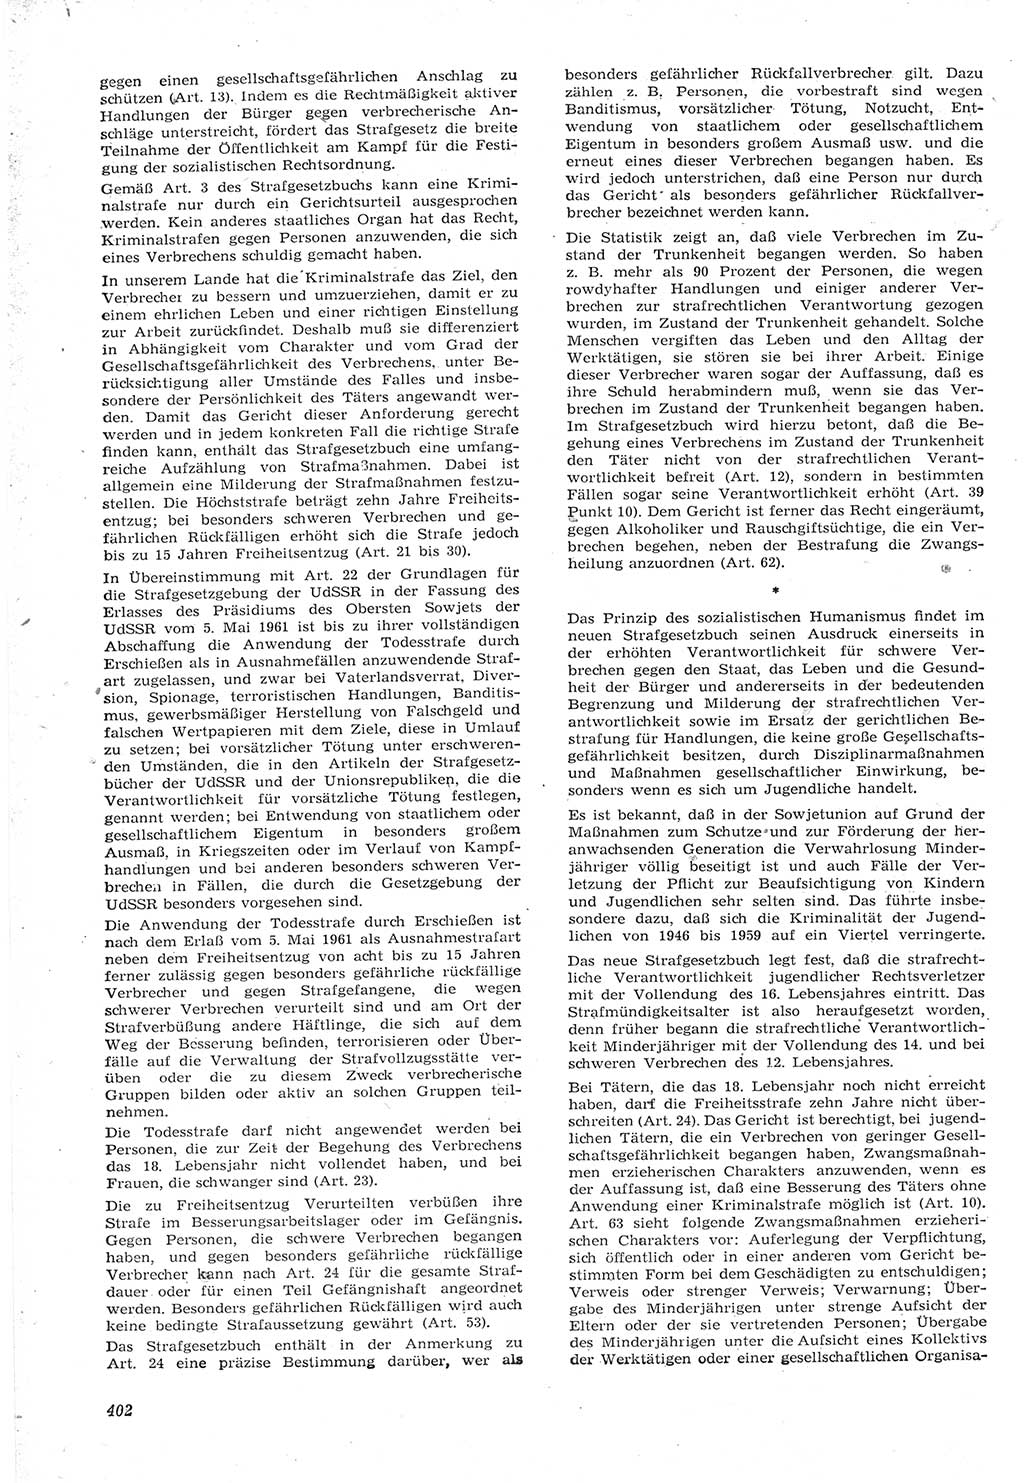 Neue Justiz (NJ), Zeitschrift für Recht und Rechtswissenschaft [Deutsche Demokratische Republik (DDR)], 15. Jahrgang 1961, Seite 402 (NJ DDR 1961, S. 402)